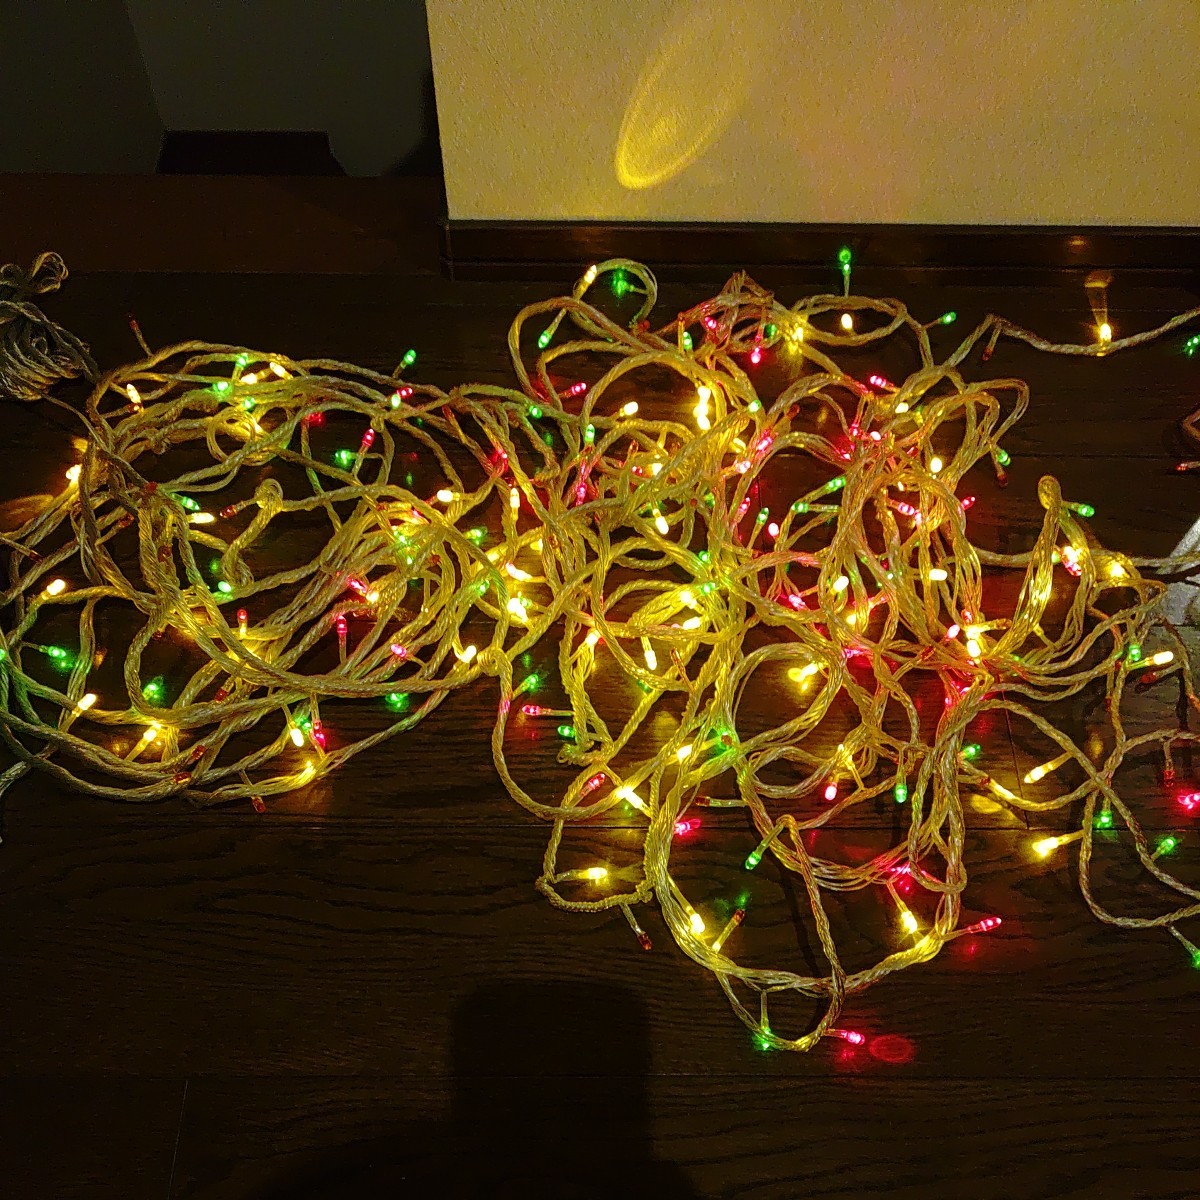 3色LEDライト 240球 中古品 防雨タイプ 赤・緑・黄色 長さ23.9m クリスマス イルミネーション イベント用にどうぞ_画像4